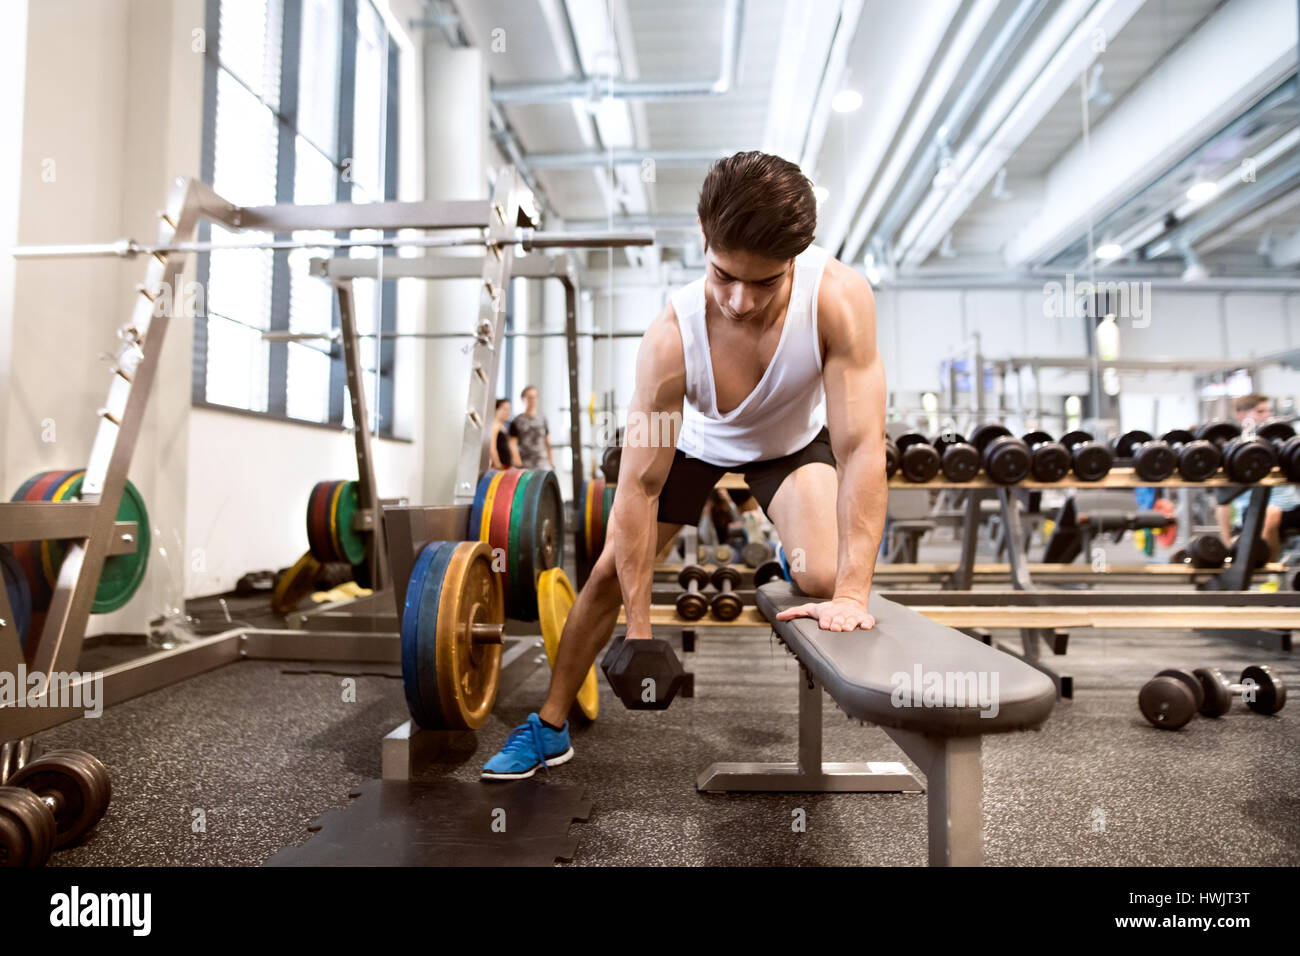 Junge spanische Fitness Mann im Fitnessstudio auf Bank, trainieren mit Gewichten Stockfoto